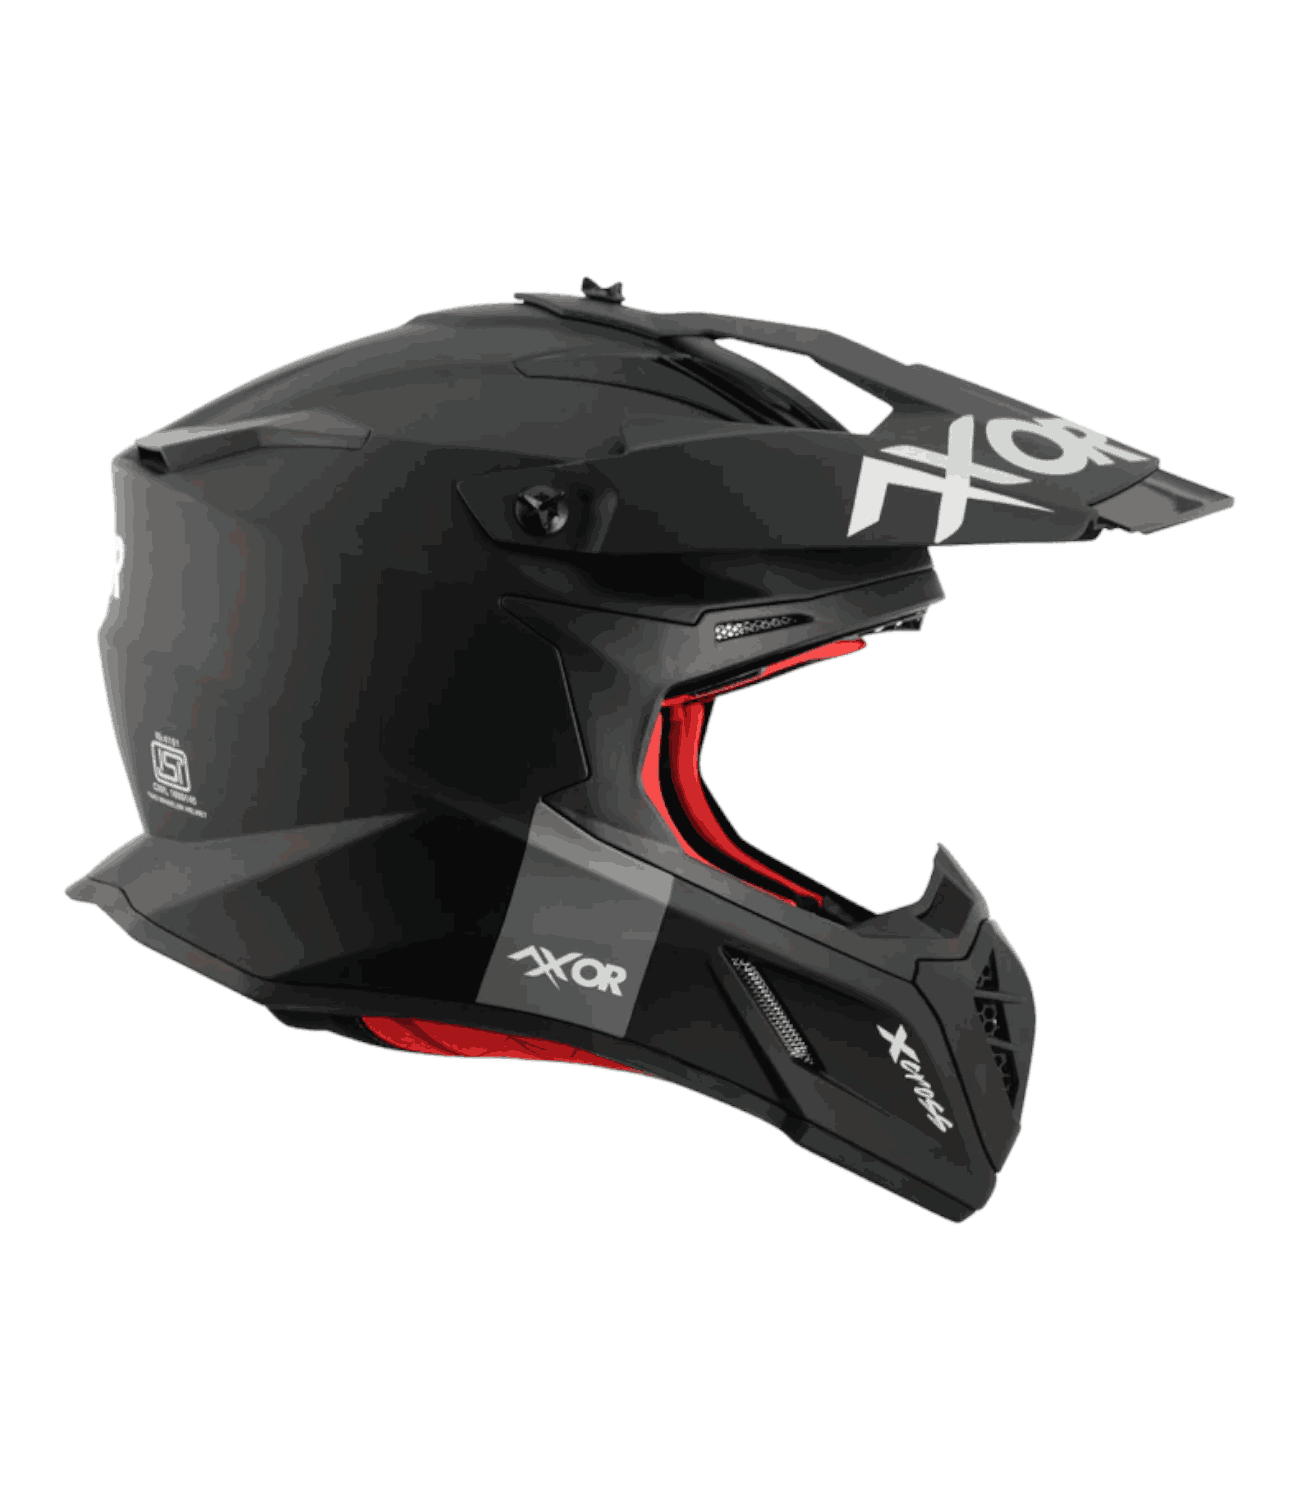 Axor X-Cross Single Color Helmet Dull Black